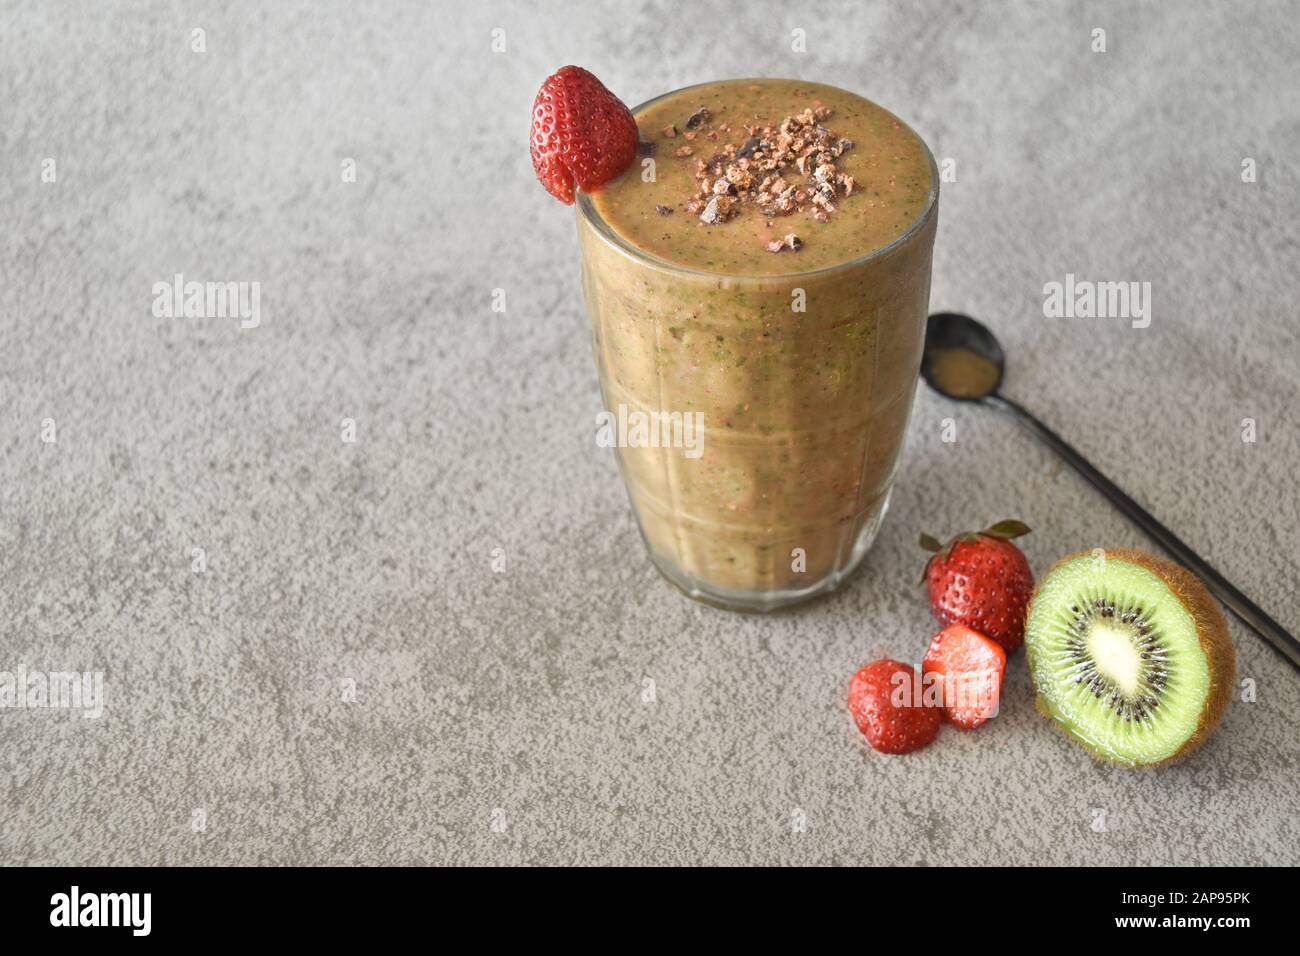 Smoothie au chocolat kiwi fraise dans un pot de maçon, alimentation saine bio et boisson, perte de poids nutrition végétalien alcalin vie végétarienne guérir Banque D'Images